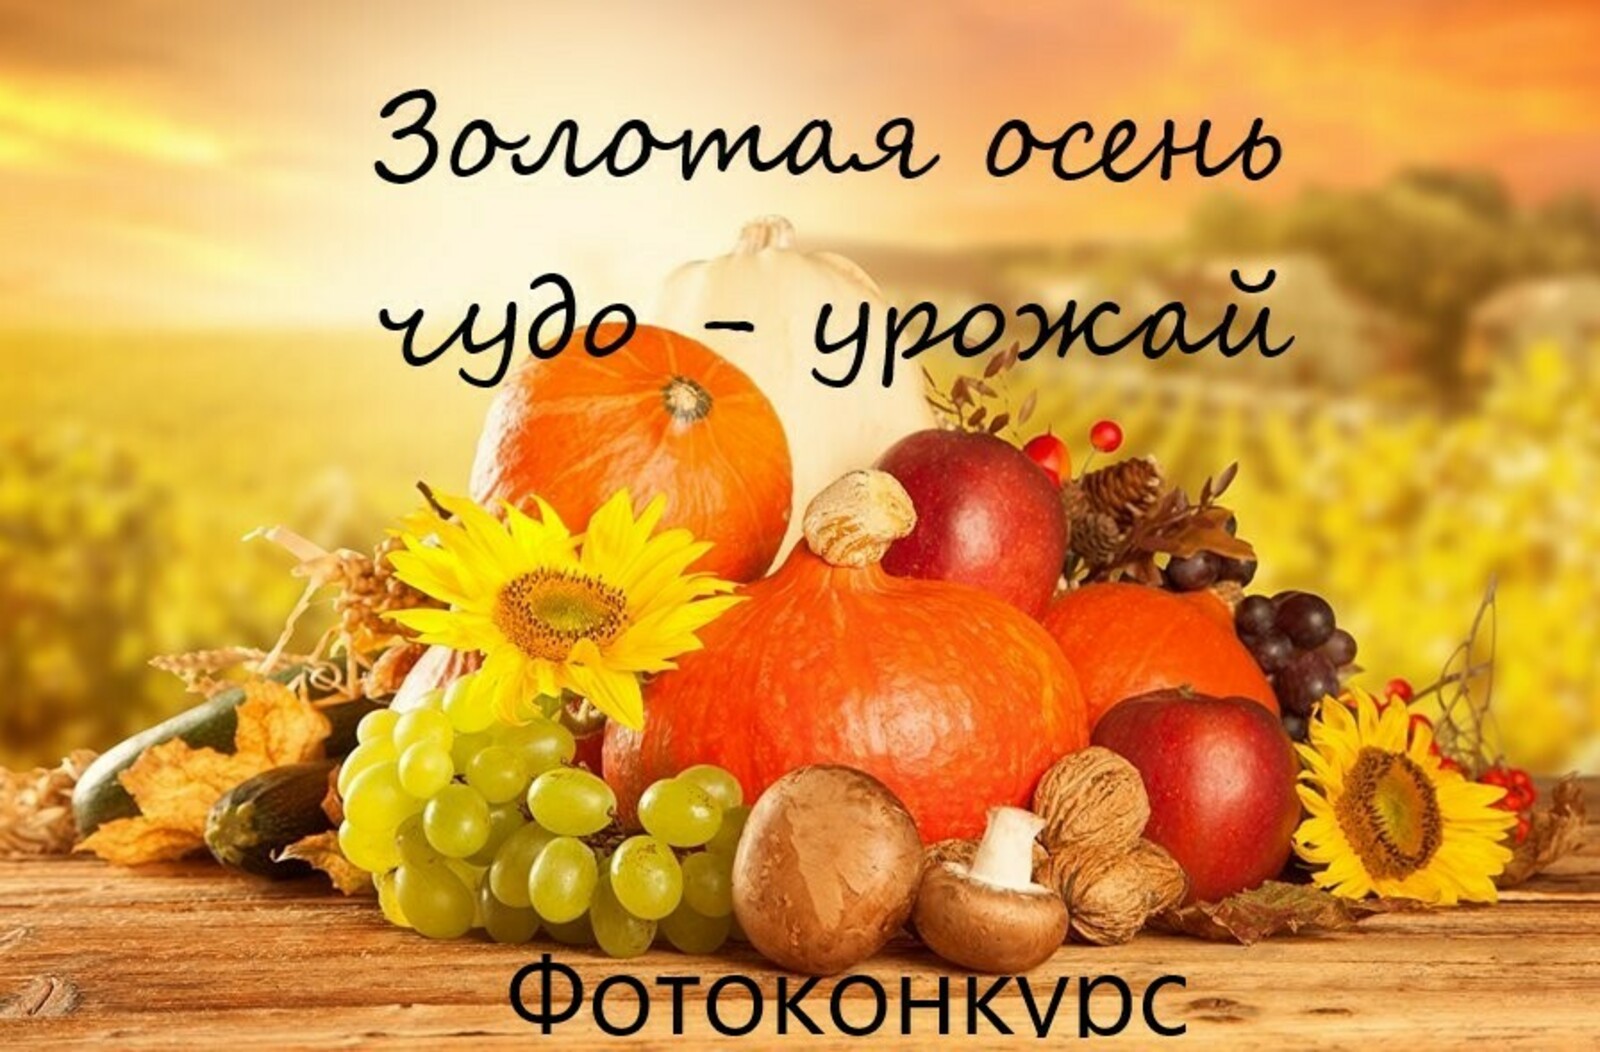 Кигинский информационный центр запускает голосование фотоконкурса "Золотая осень: чудо-урожай"